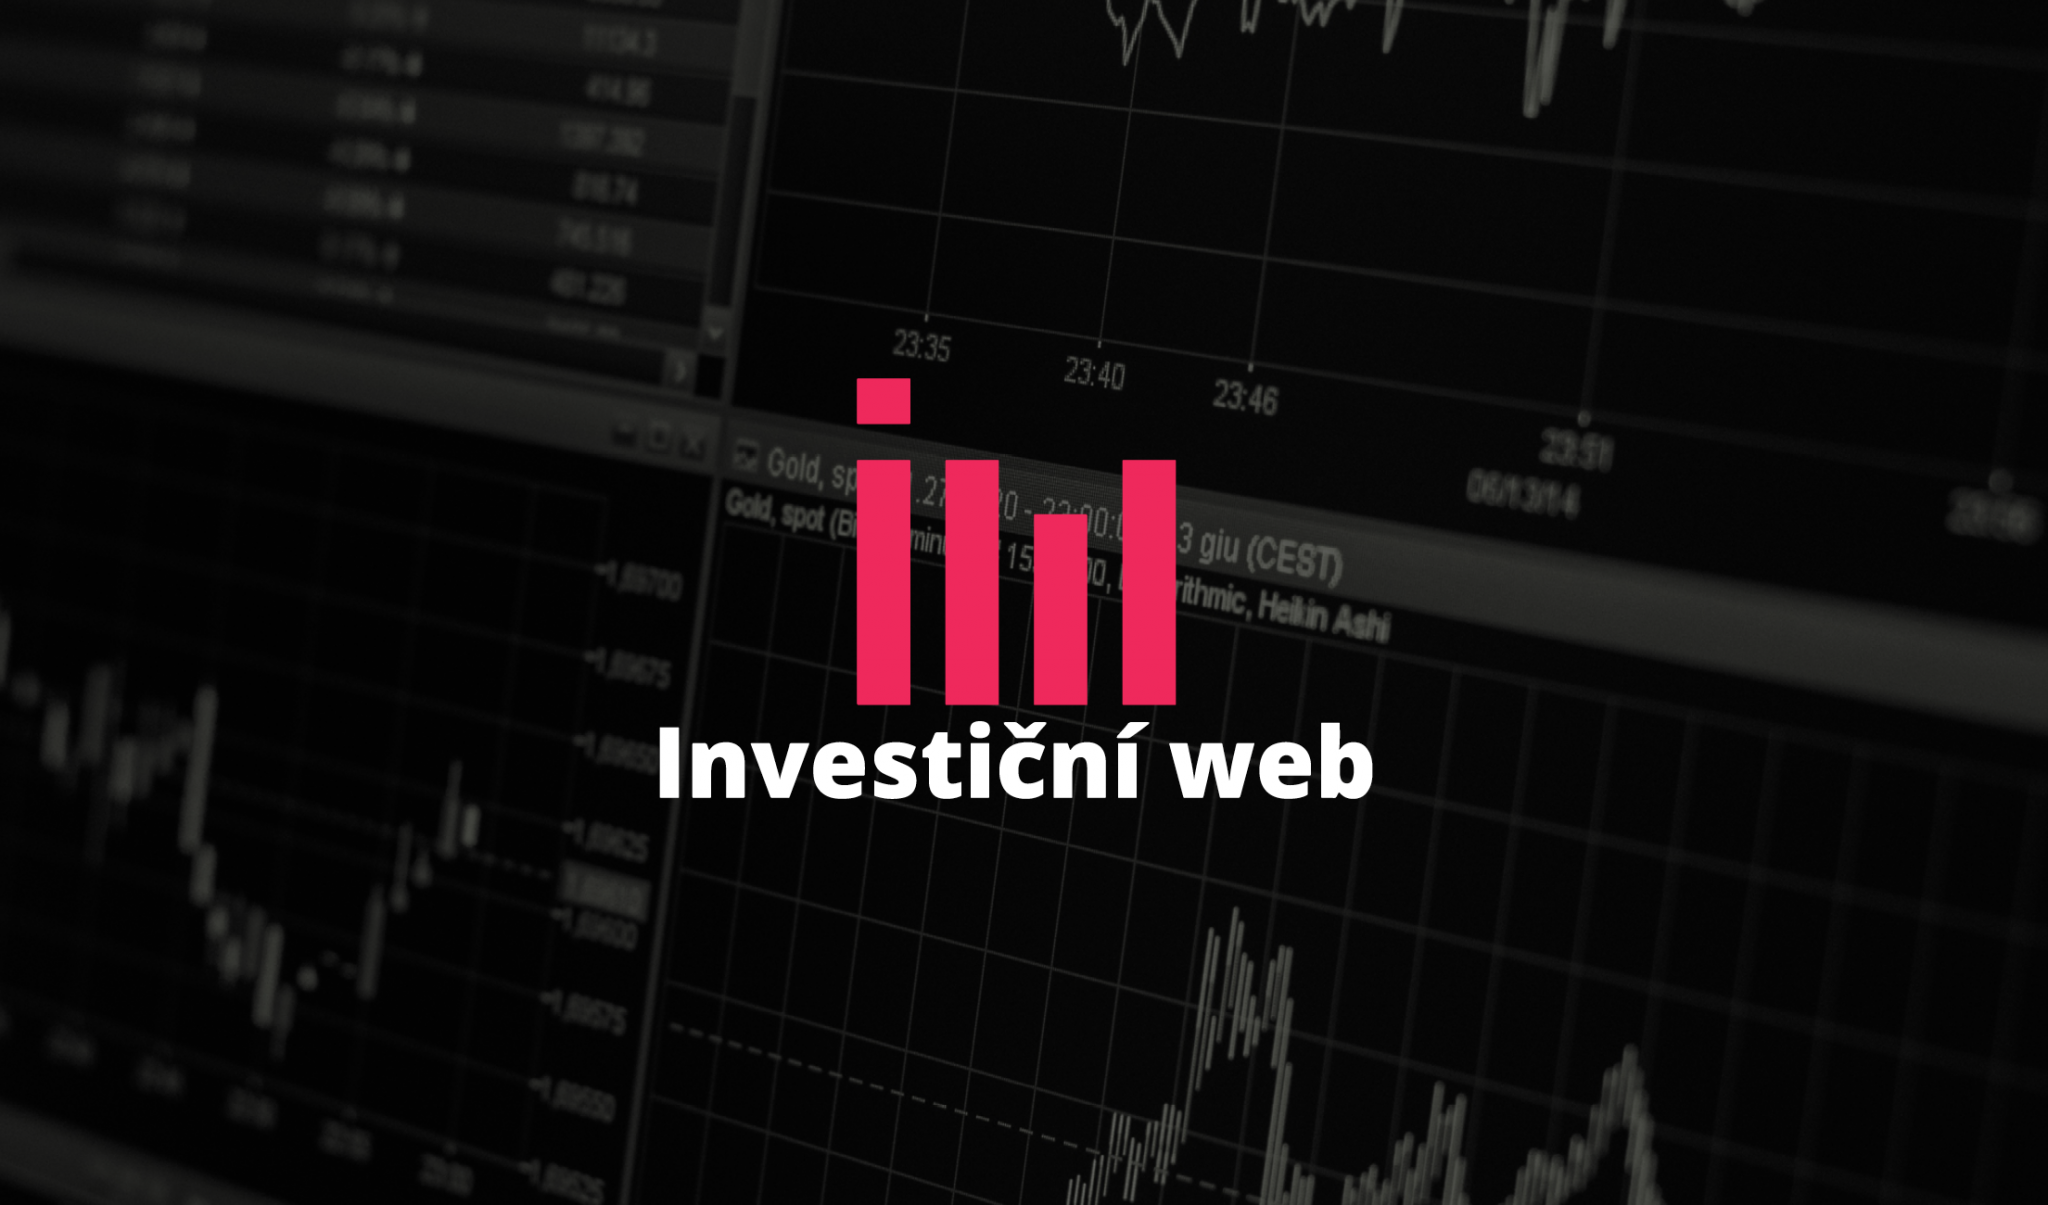 Investiční web